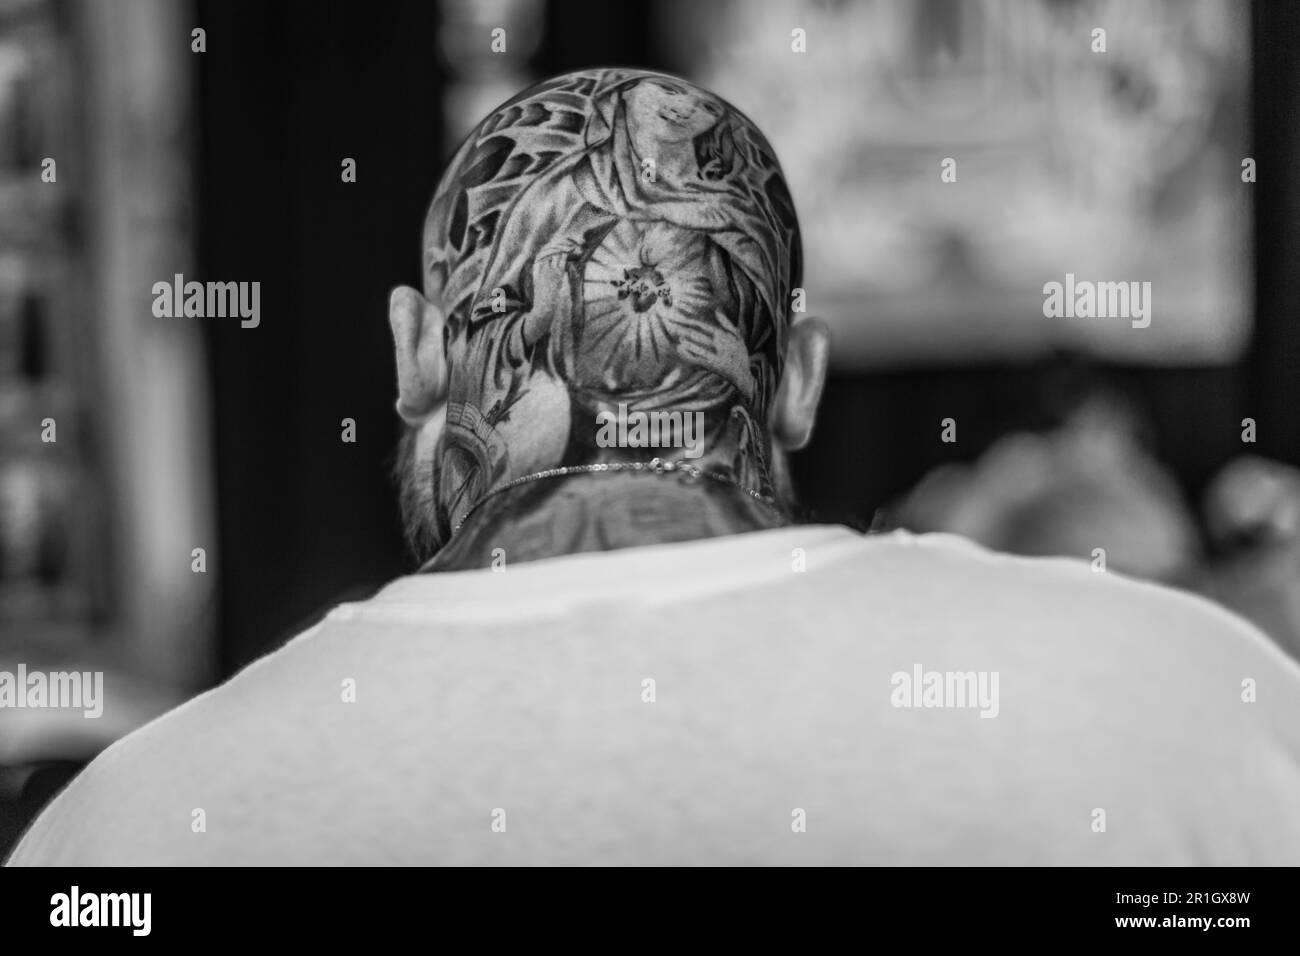 Immagine in bianco e nero di una vista posteriore di un calvo con un tatuaggio sul cranio. Foto Stock